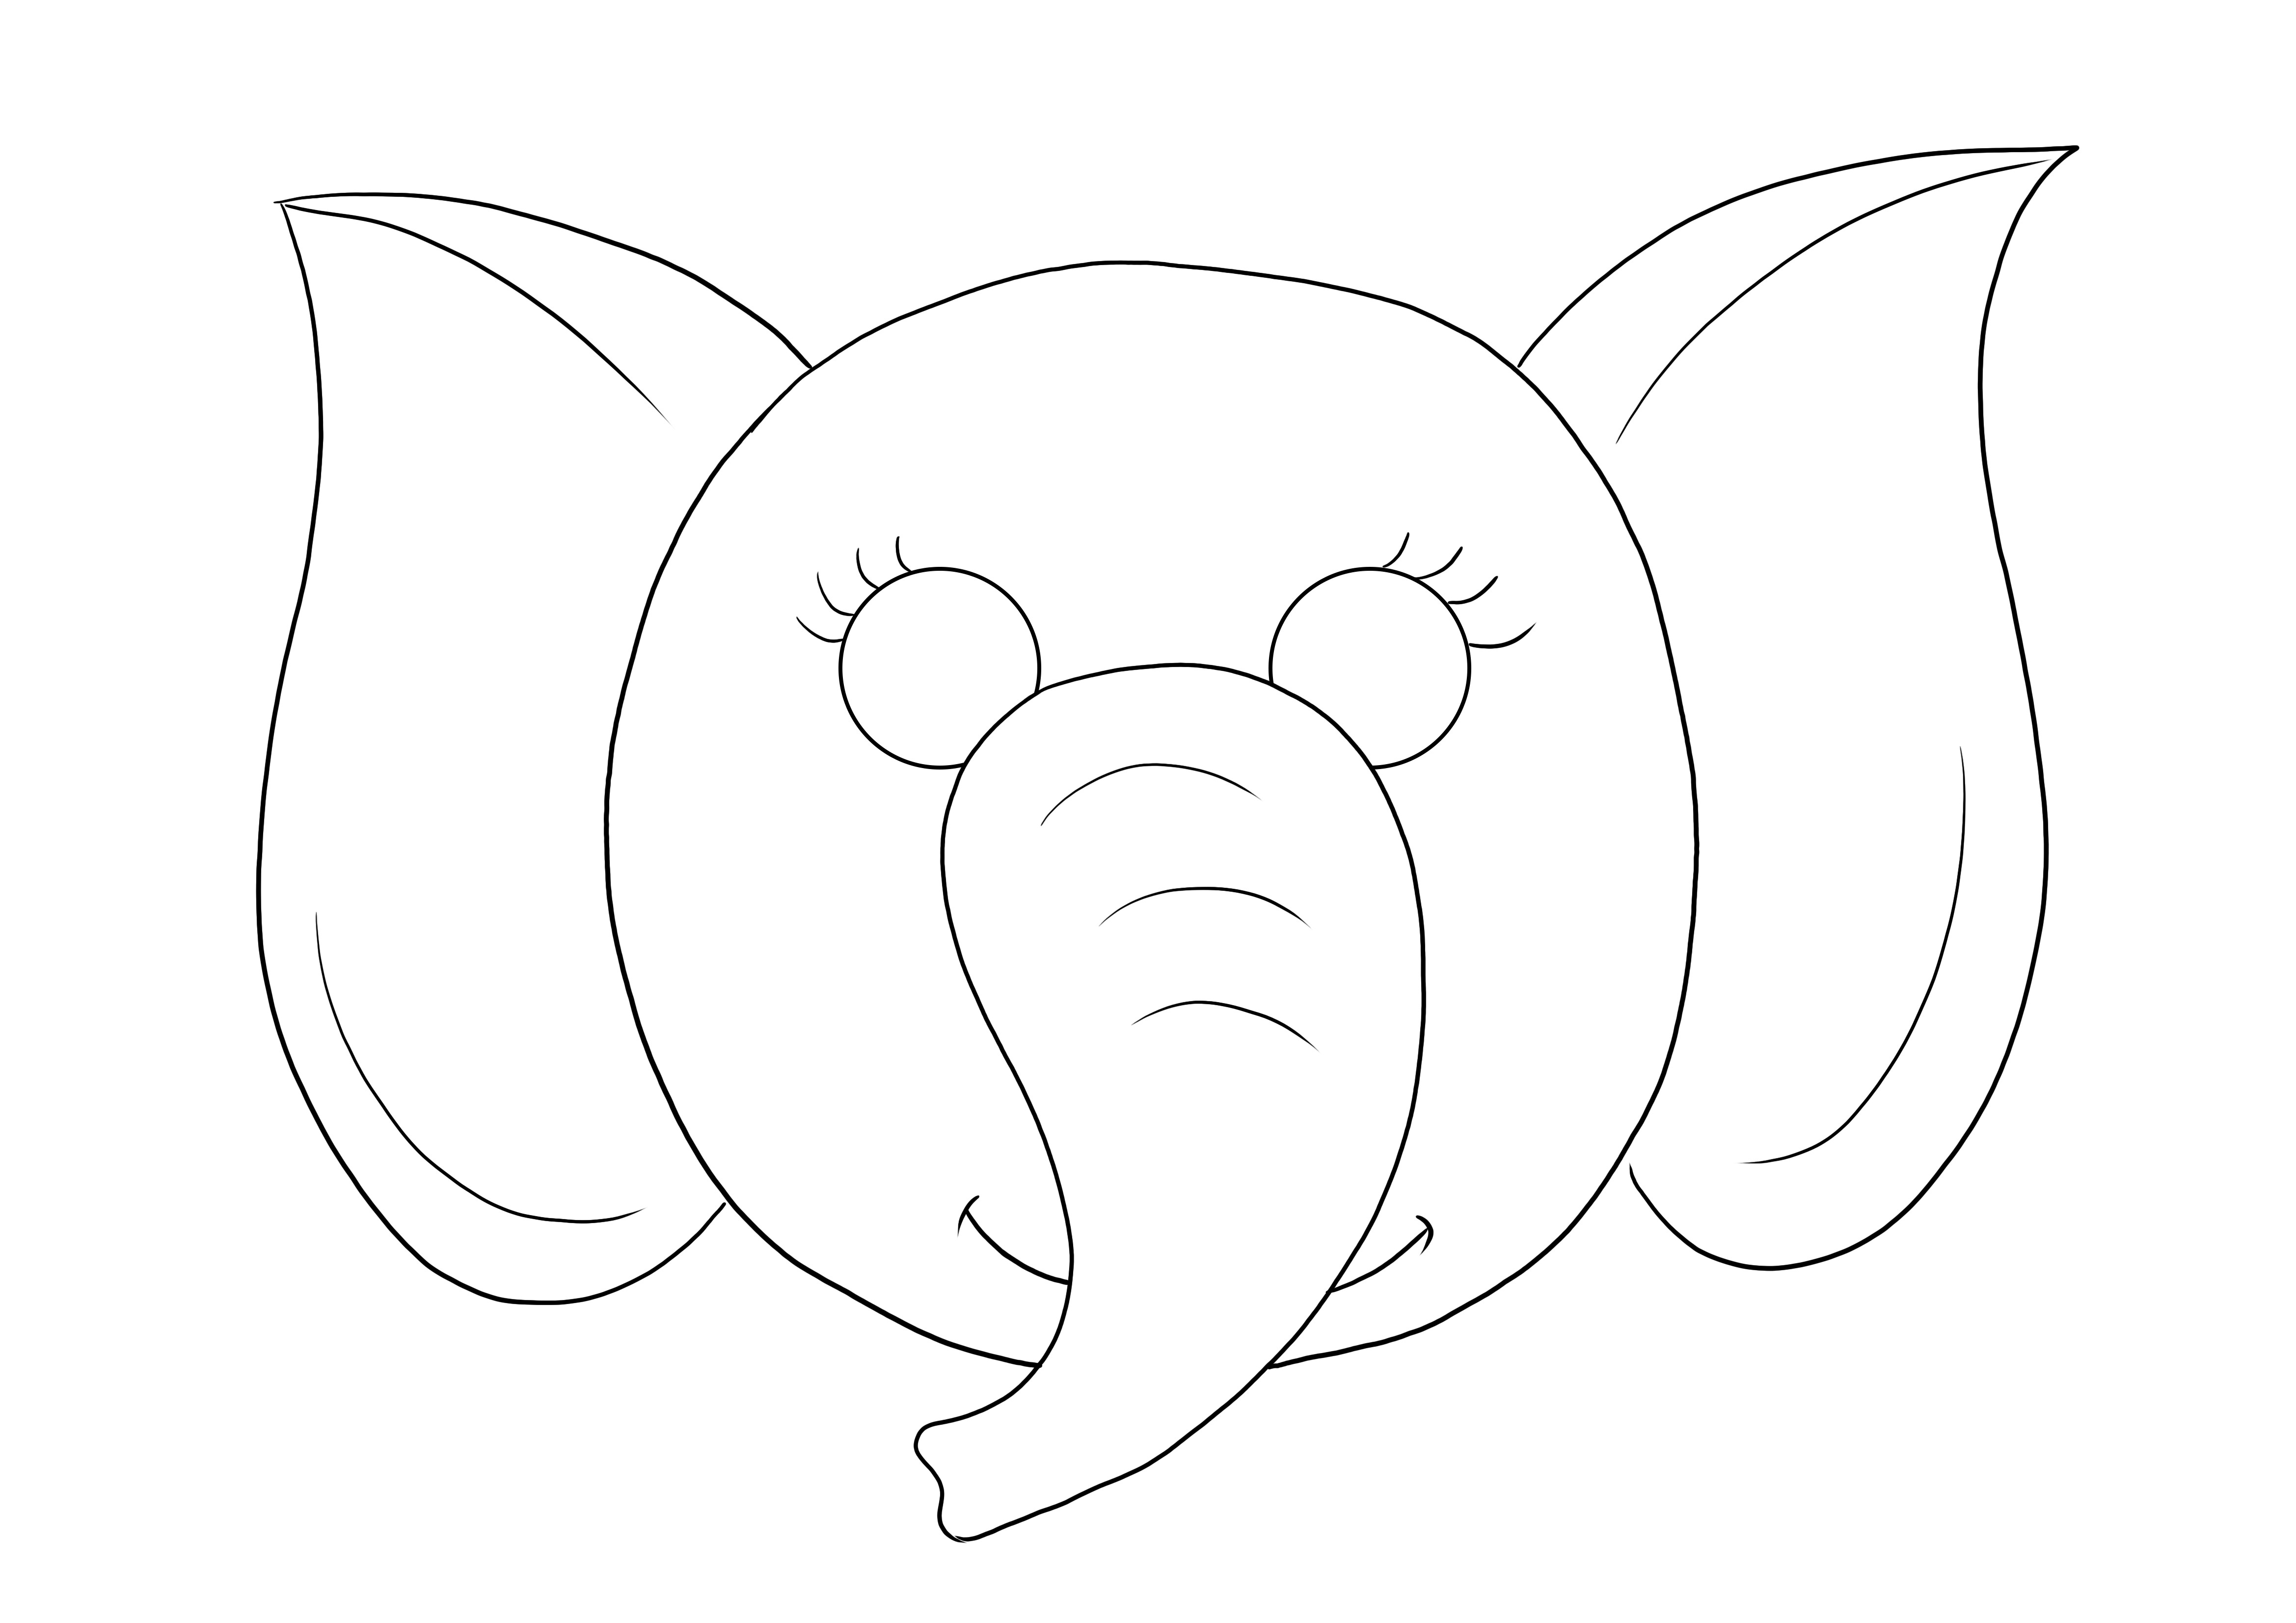 Halaman mewarnai Topeng Gajah sederhana untuk diunduh secara gratis